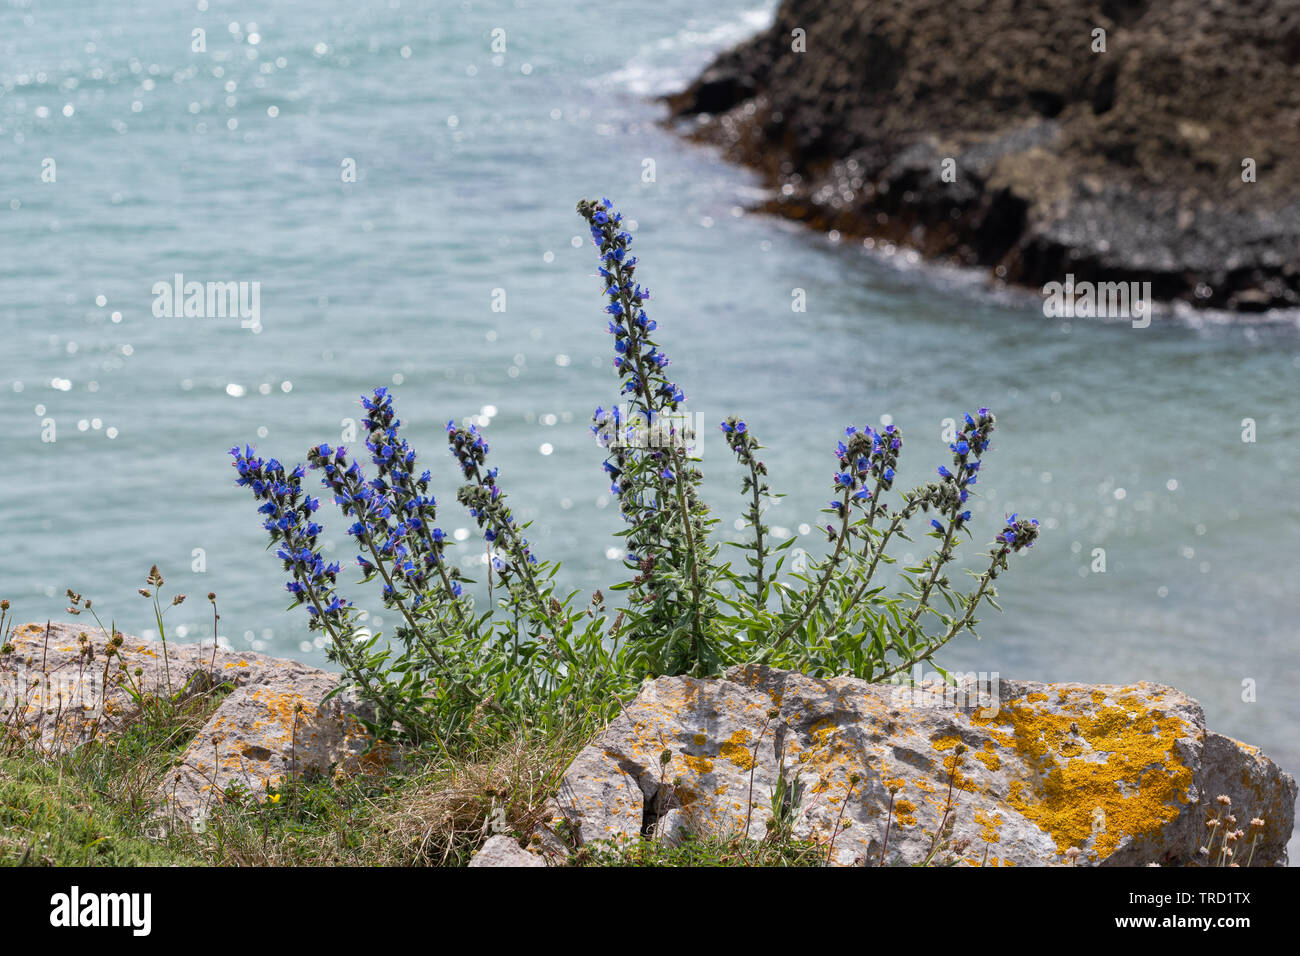 La vipère (Vipérine commune Echium vulgare), un bleu wildflower dans la famille des Boraginacées, poussant sur les falaises de la côte du Pembrokeshire, au cours de juin, Pays de Galles, Royaume-Uni Banque D'Images